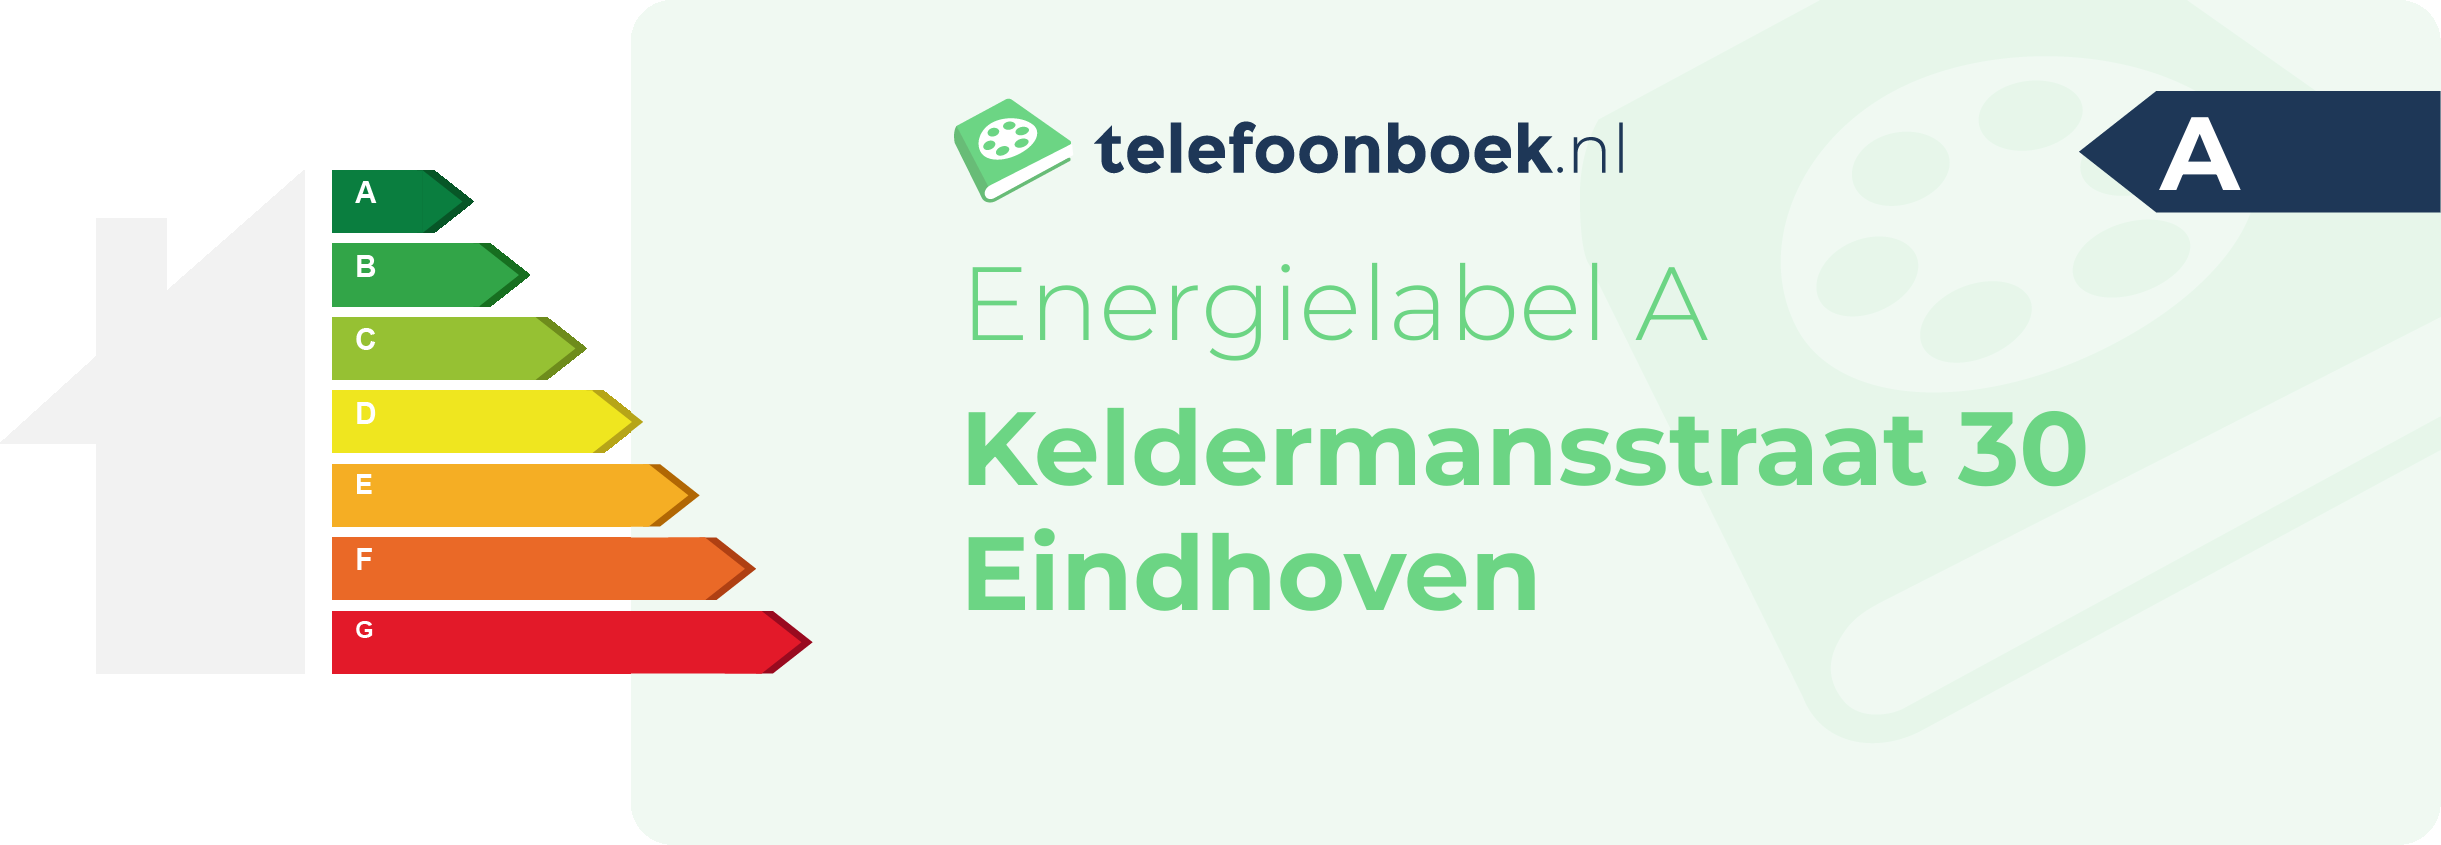 Energielabel Keldermansstraat 30 Eindhoven